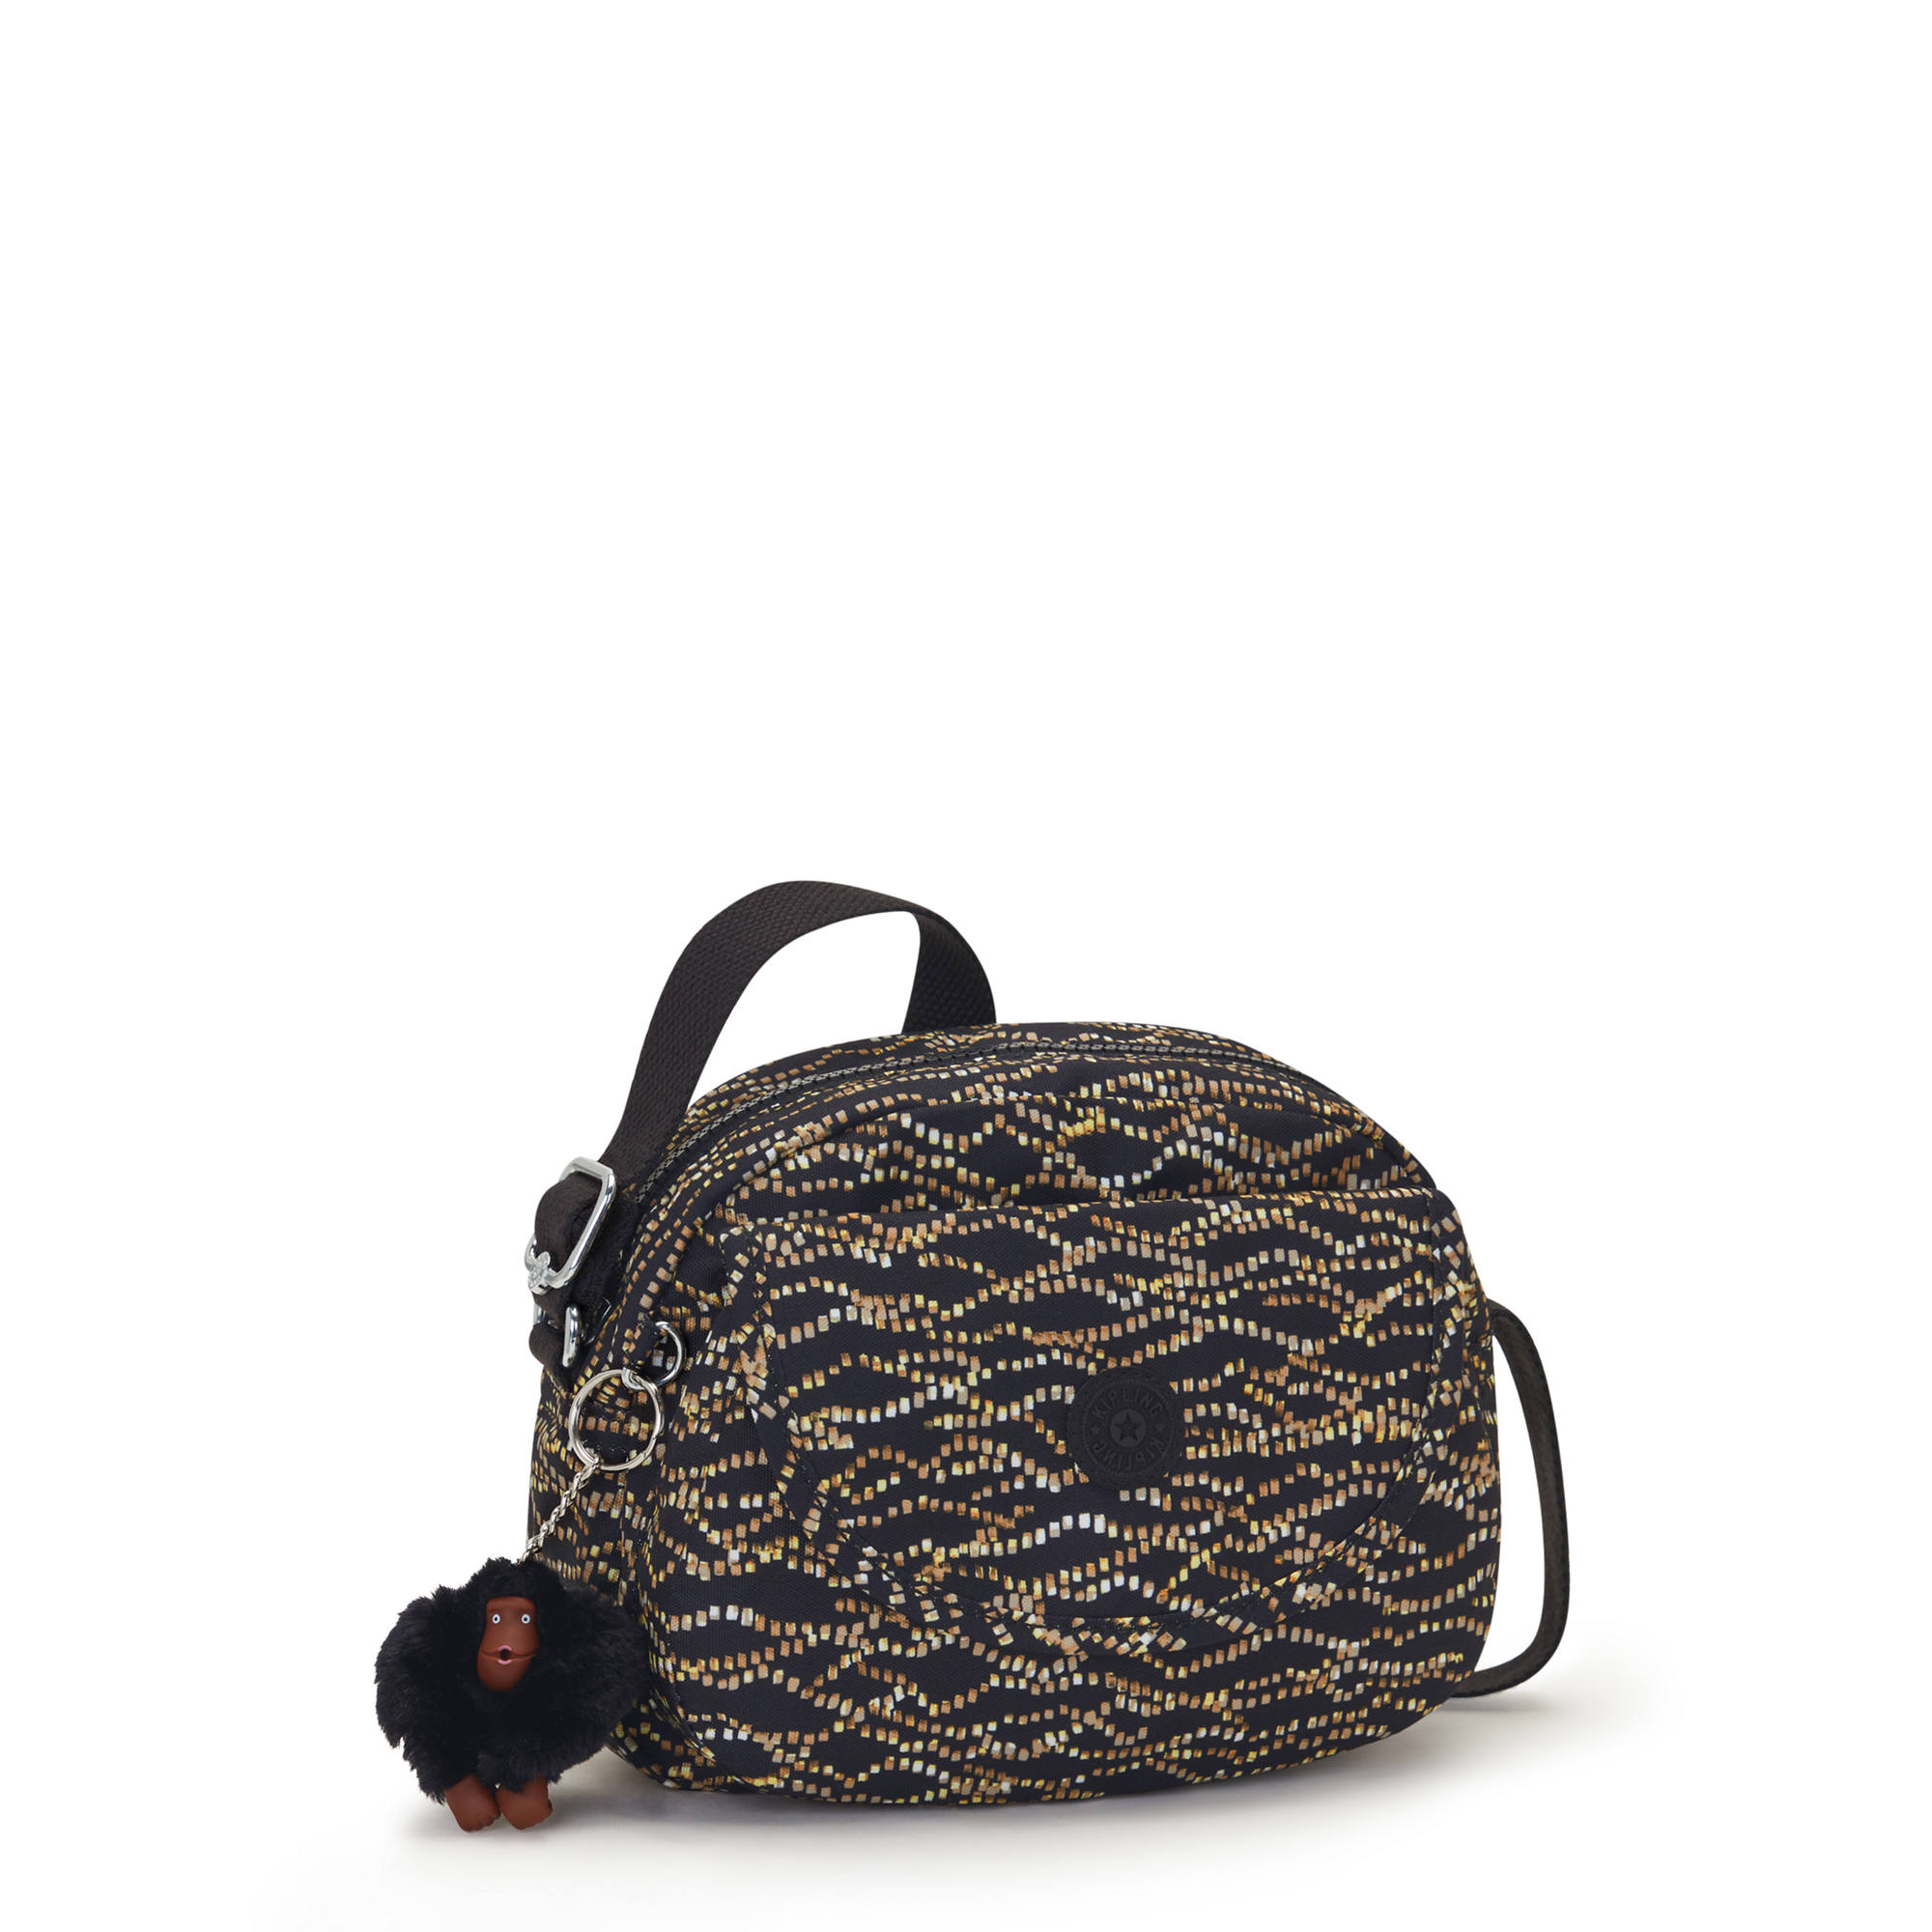 Kipling Stelma Printed Crossbody Bag | eBay